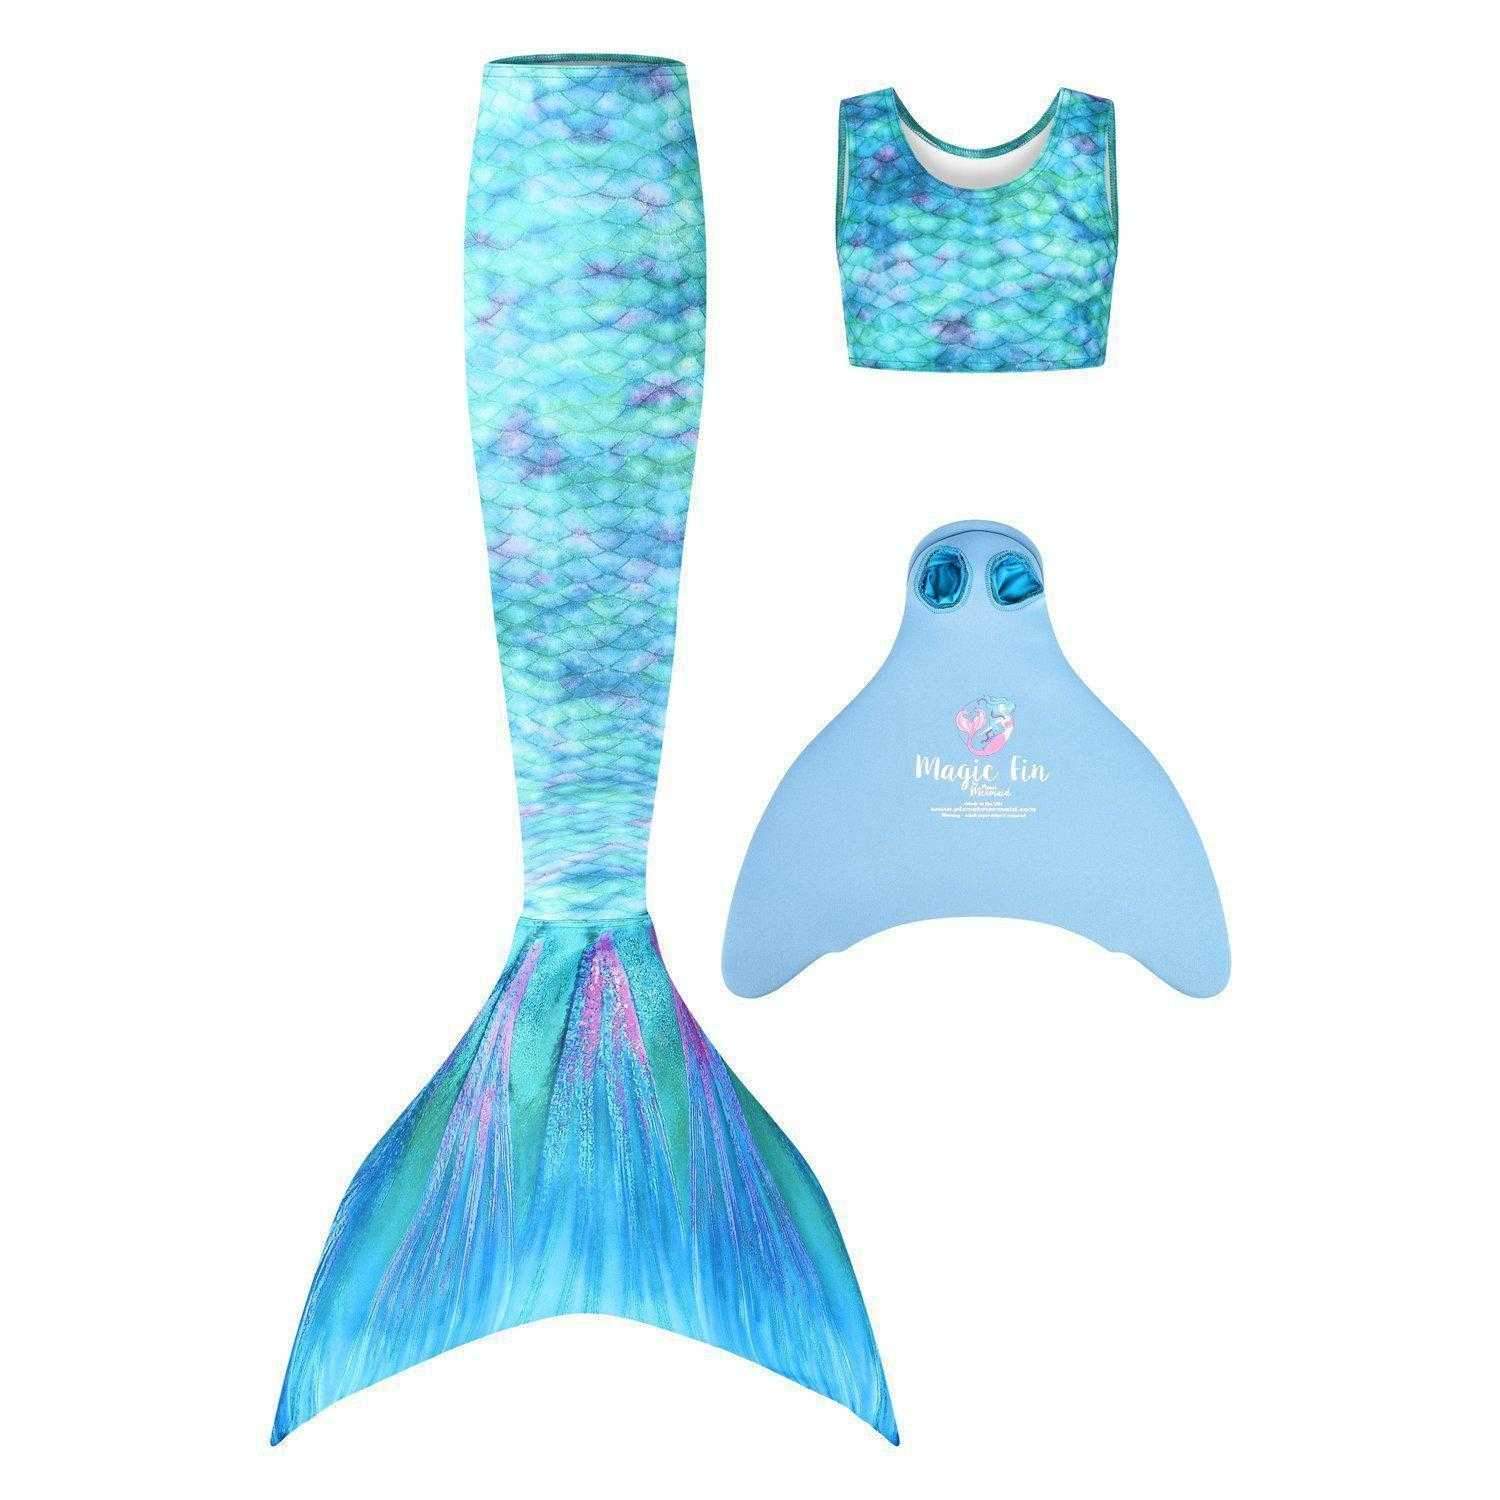 Scallop - Bluetiful  Mermaid Tails and Mermaid tops by Mermaid